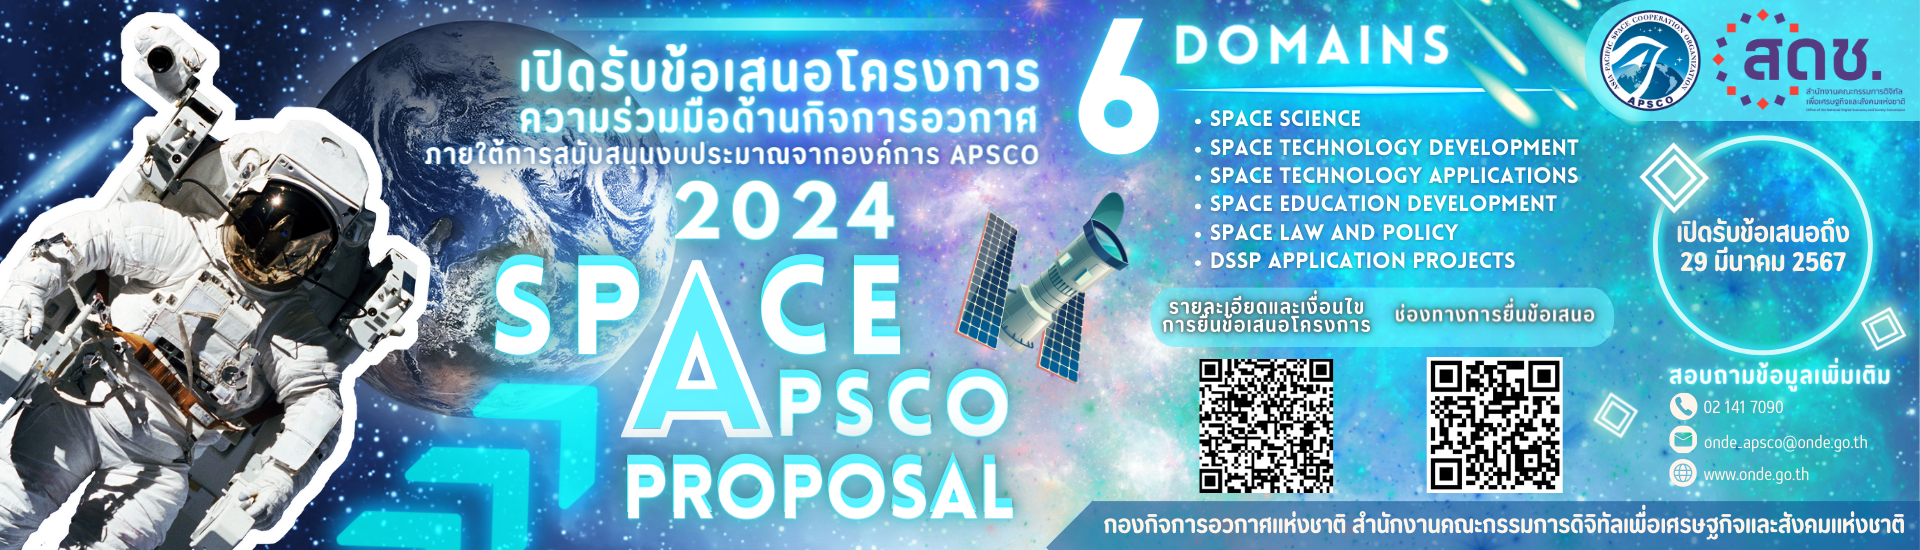 การเปิดรับข้อเสนอโครงการ/กิจกรรมความร่วมมือด้านกิจการอวกาศ เพื่อขอรับการสนับสนุนภายใต้กรอบความร่วมมือขององค์การ APSCO